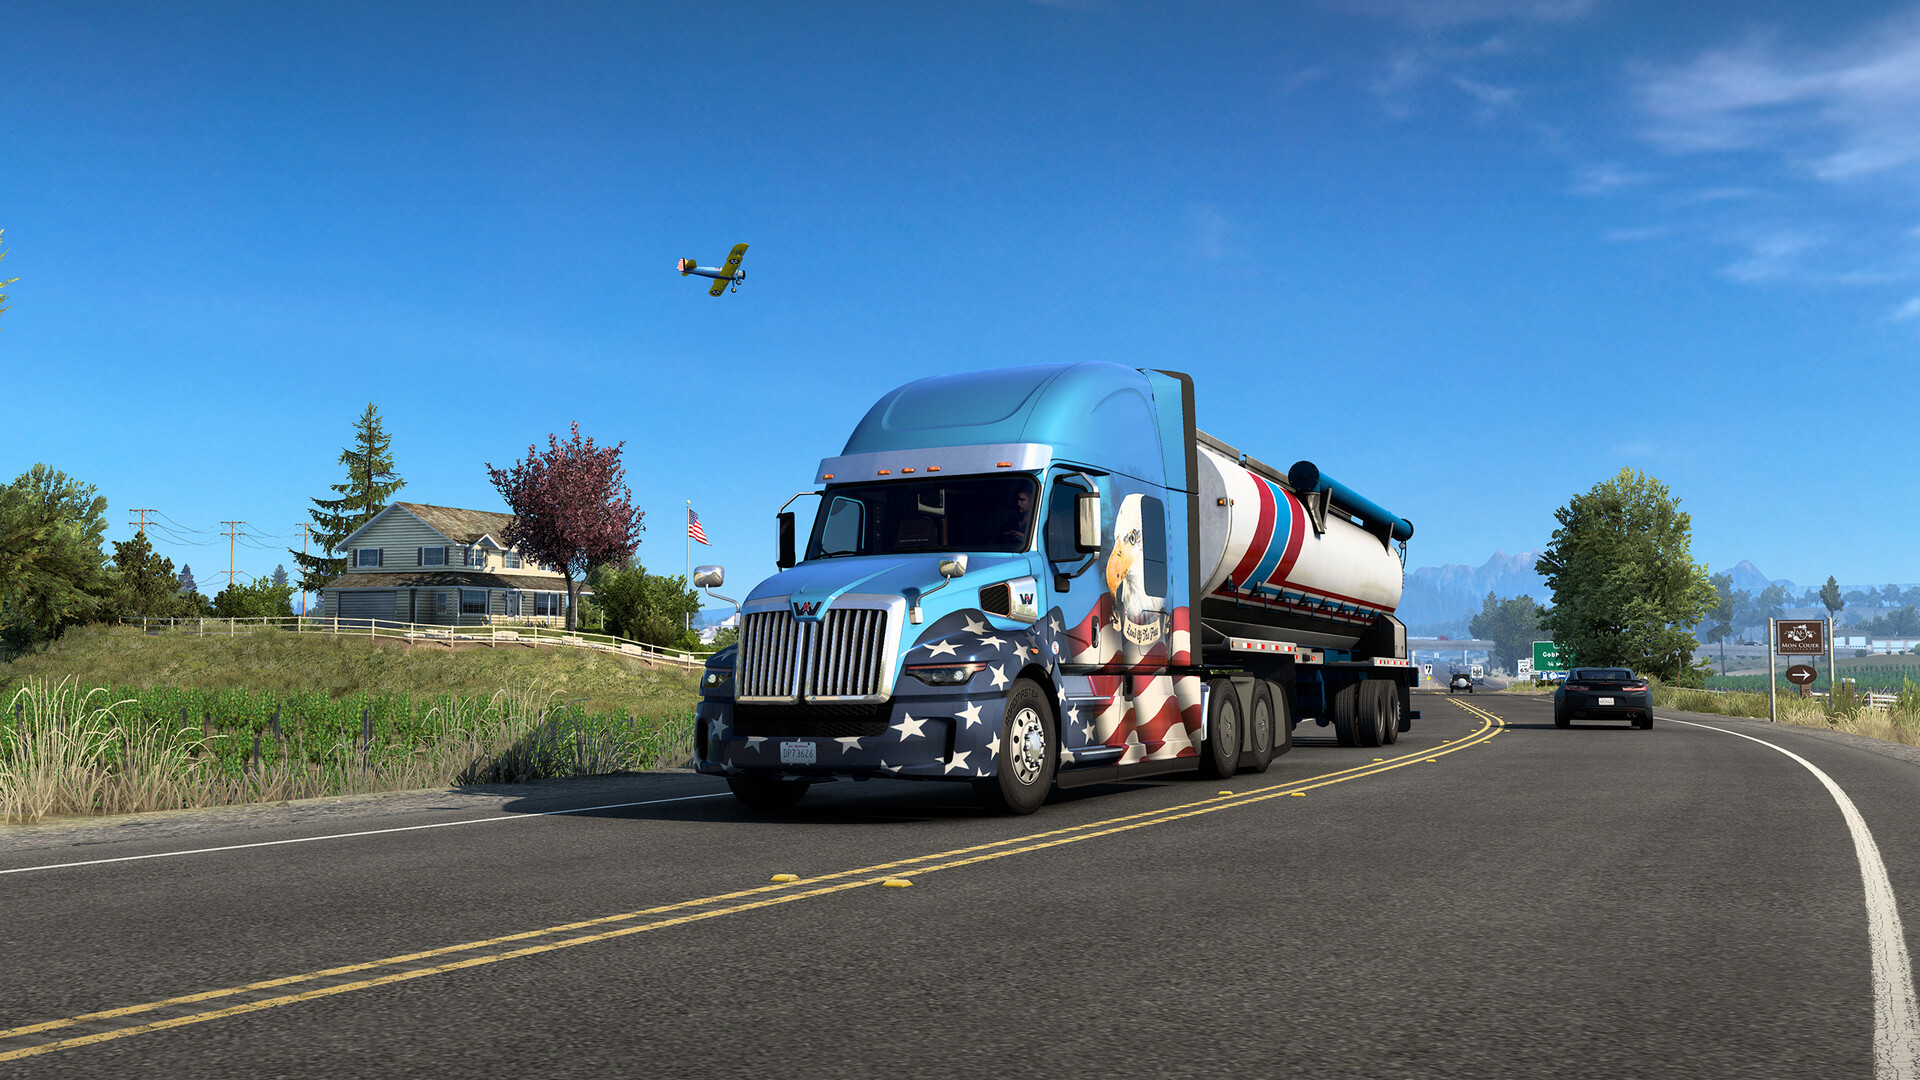 American Truck Simulator Screenshot 1